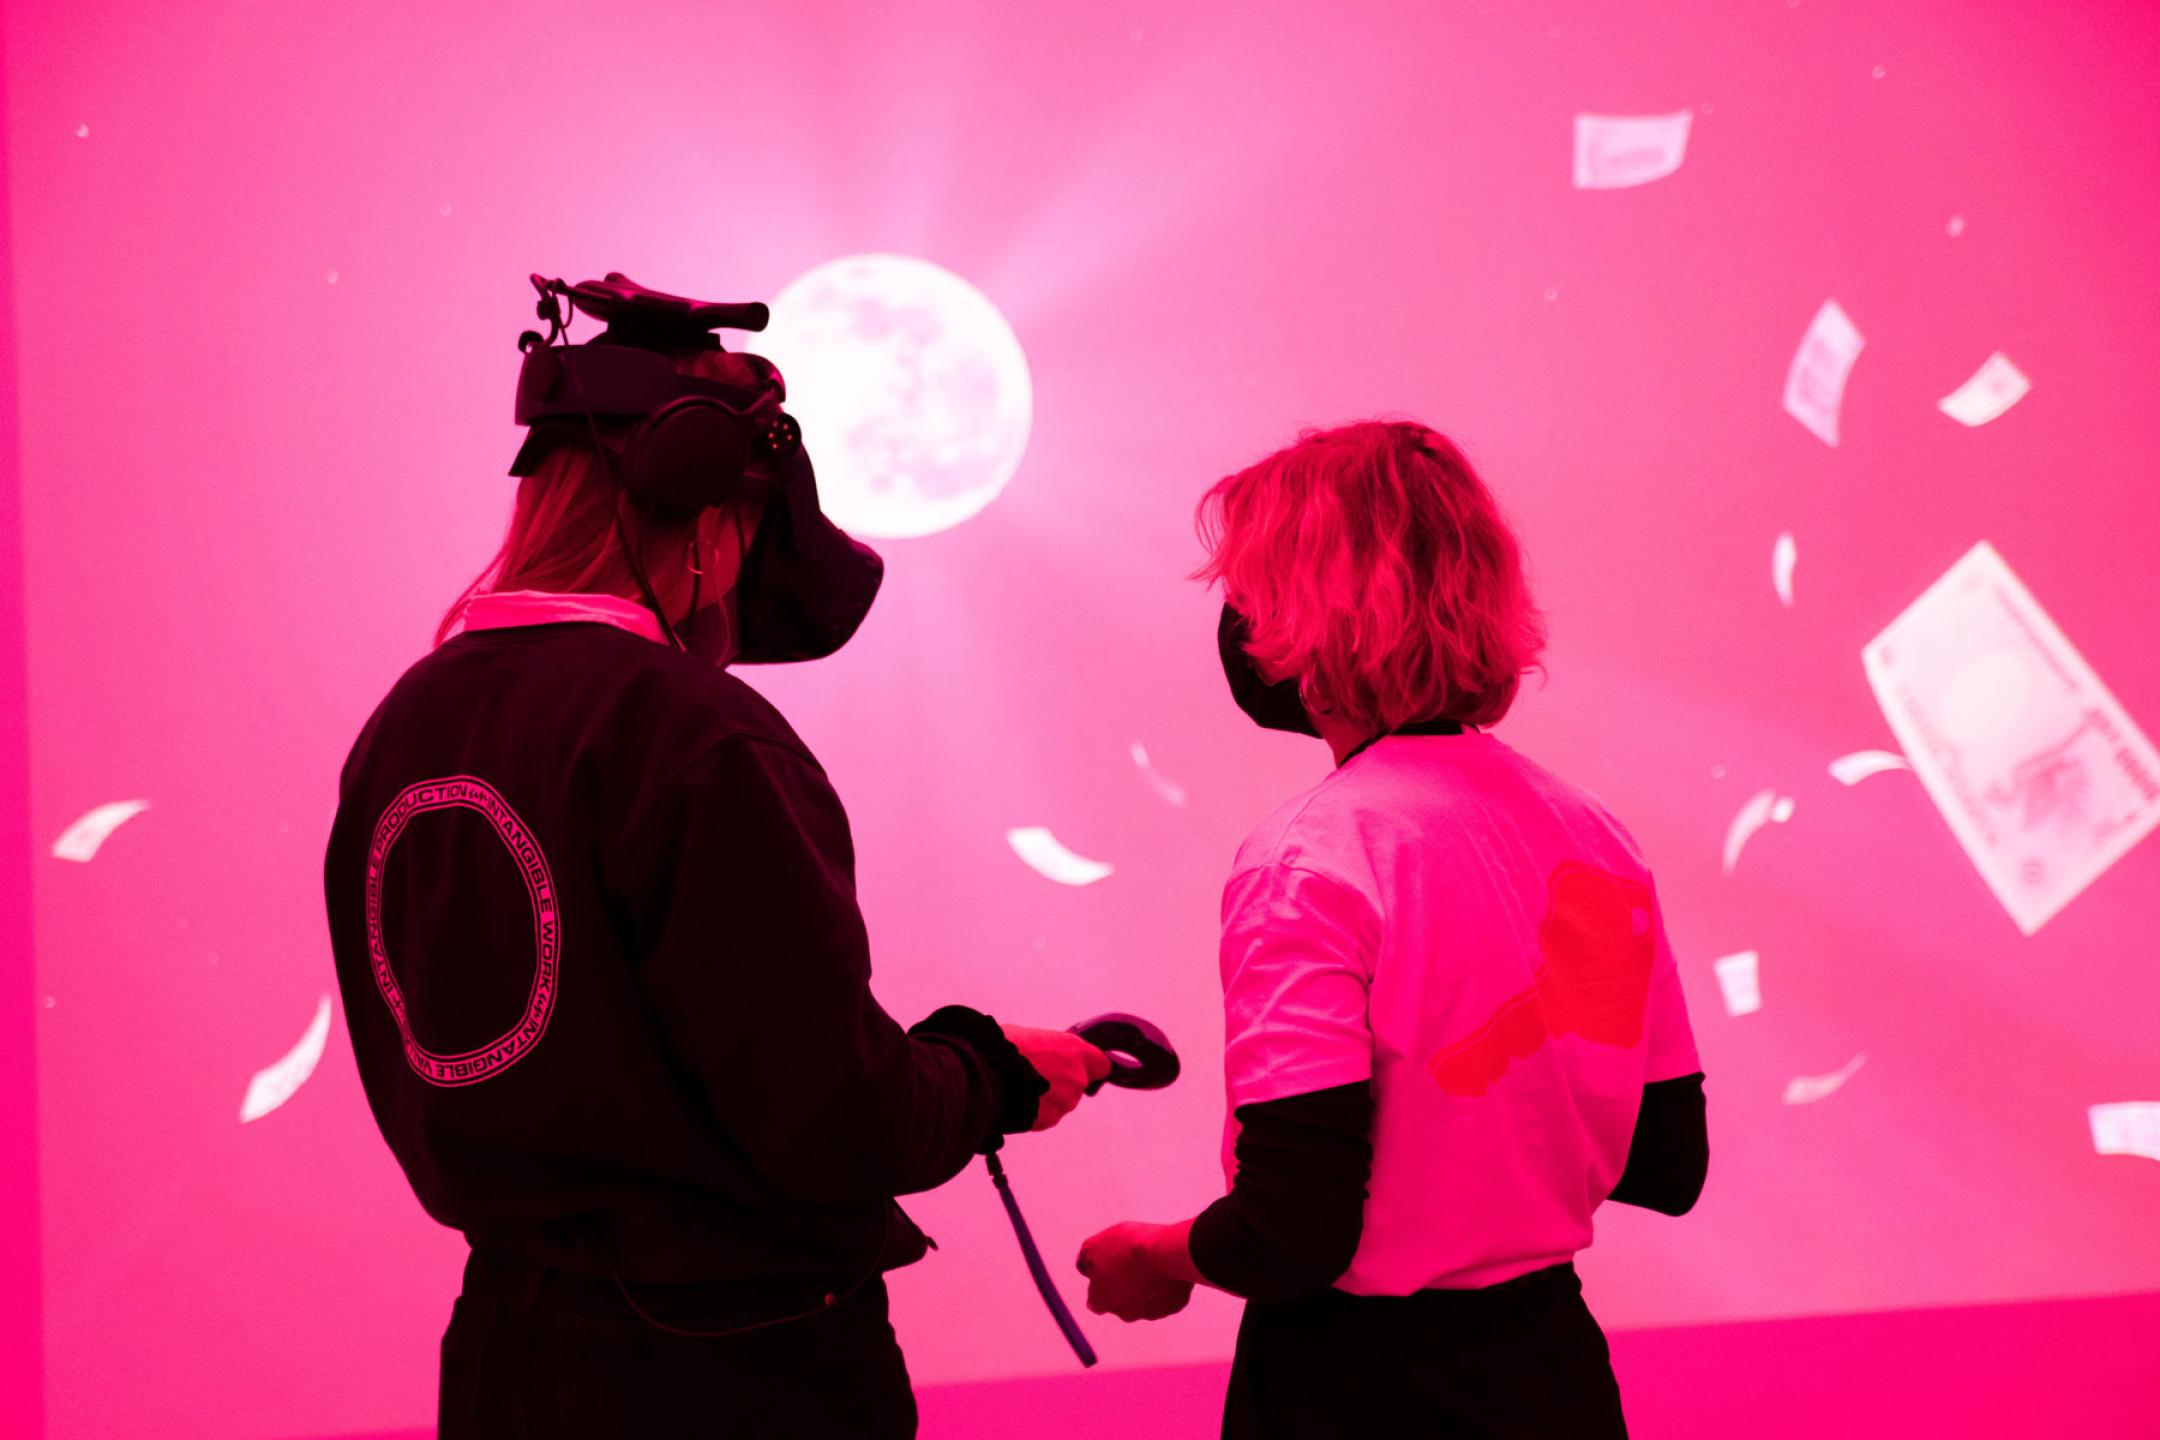 Zwei Personen stehen in einem Raum, der in Pinkes Licht getaucht ist. Vor ihnen eine riesige Leinwand, auf der ein Mond und fliegende Geldscheine zu sehen sind. Die Person links trägt eine VR-Brille.